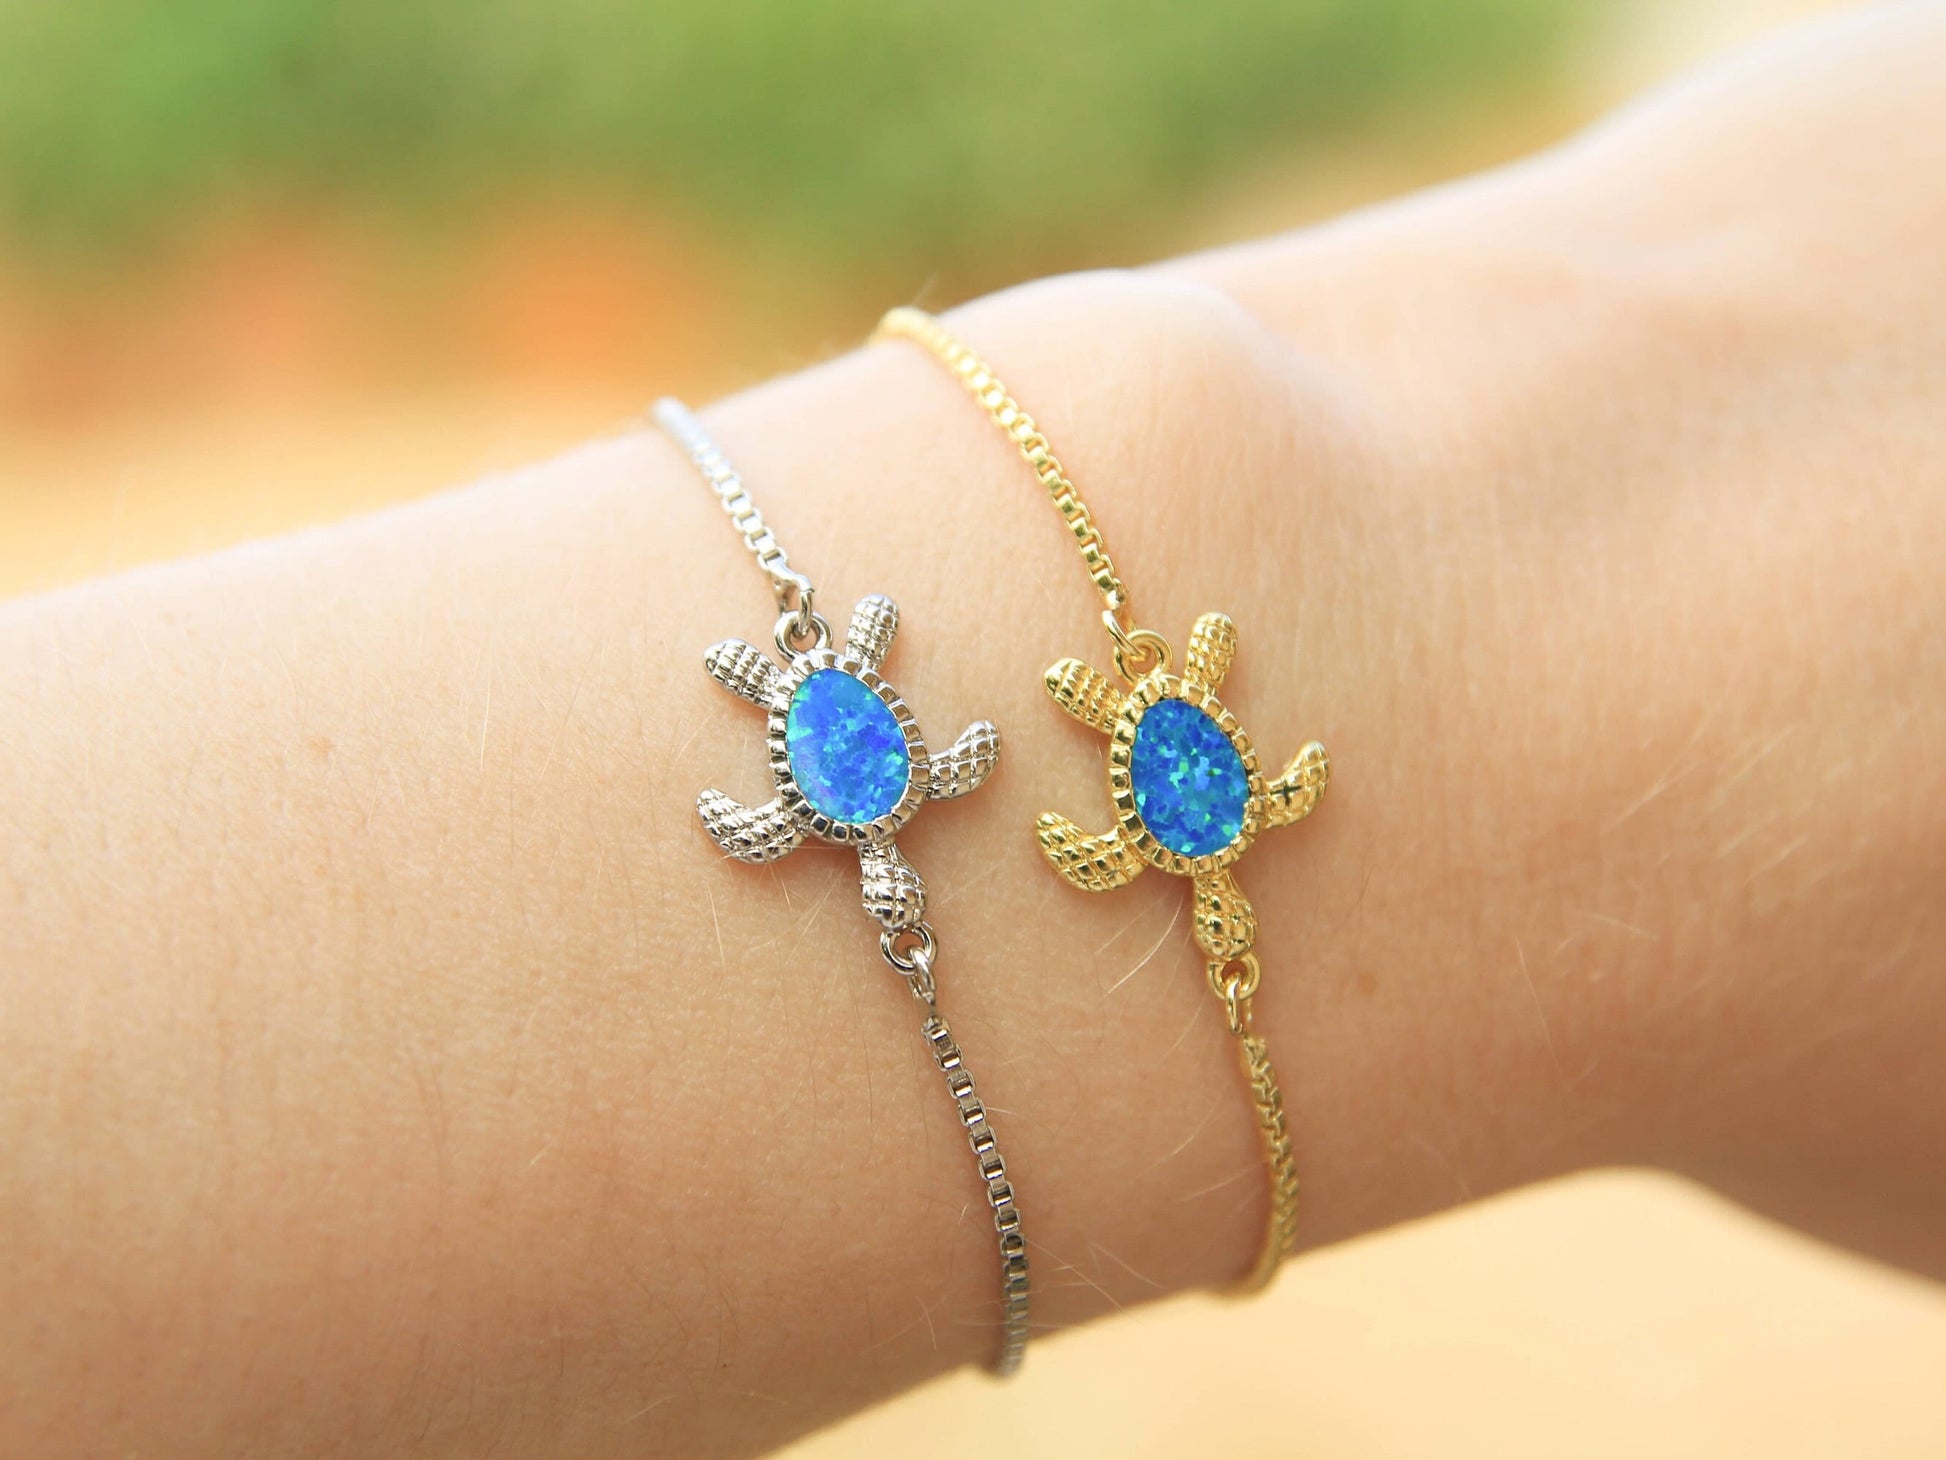 Blue Opal Turtle Bracelet